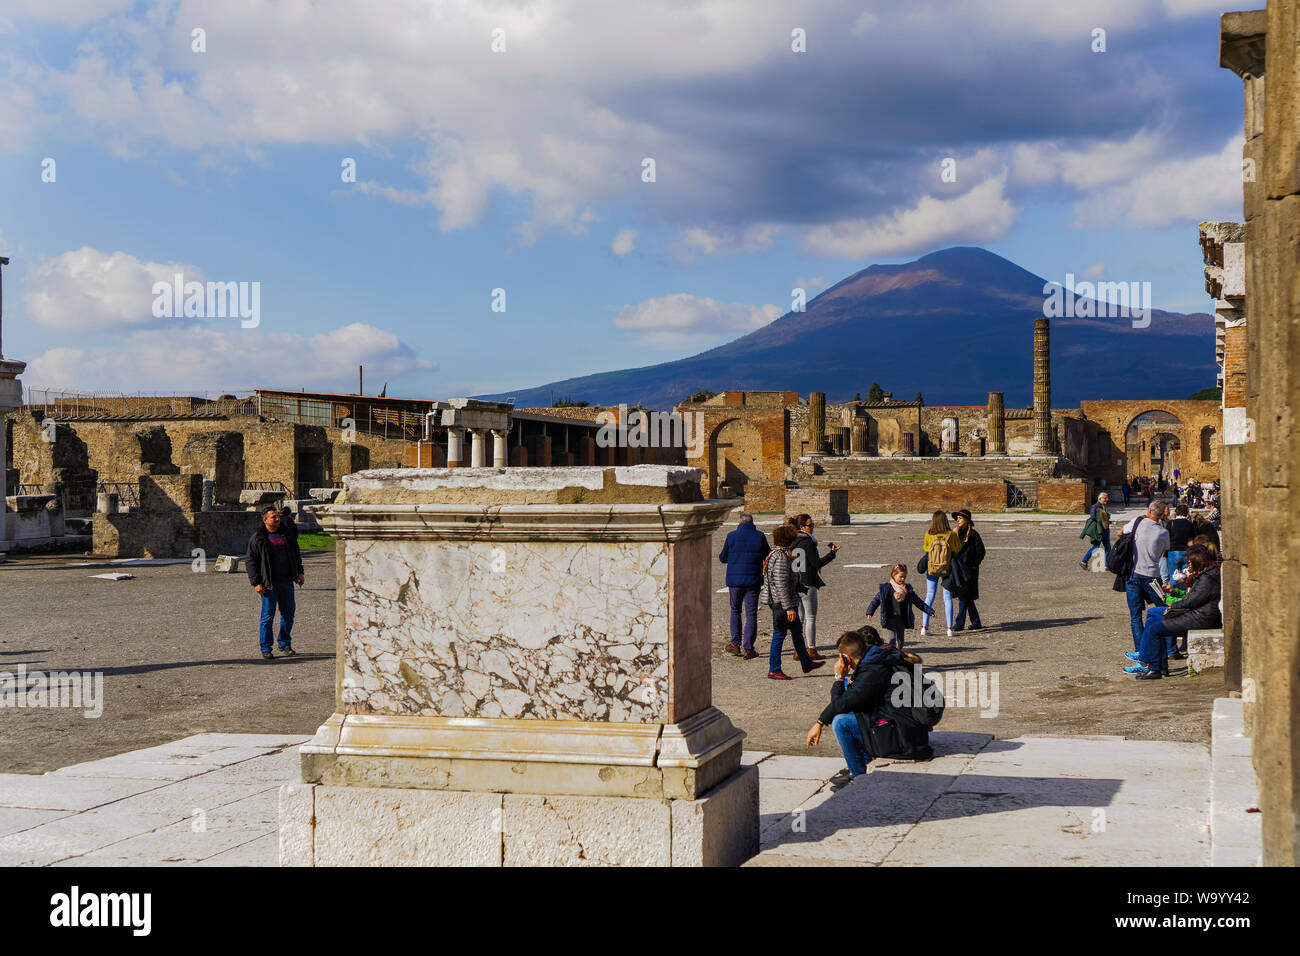 Pompeya, Italia Foro di Pompeya con el Vesubio de fondo. Foro de Pompeya con los visitantes antes de restos arqueológicos del Templo de Júpiter. Foto de stock